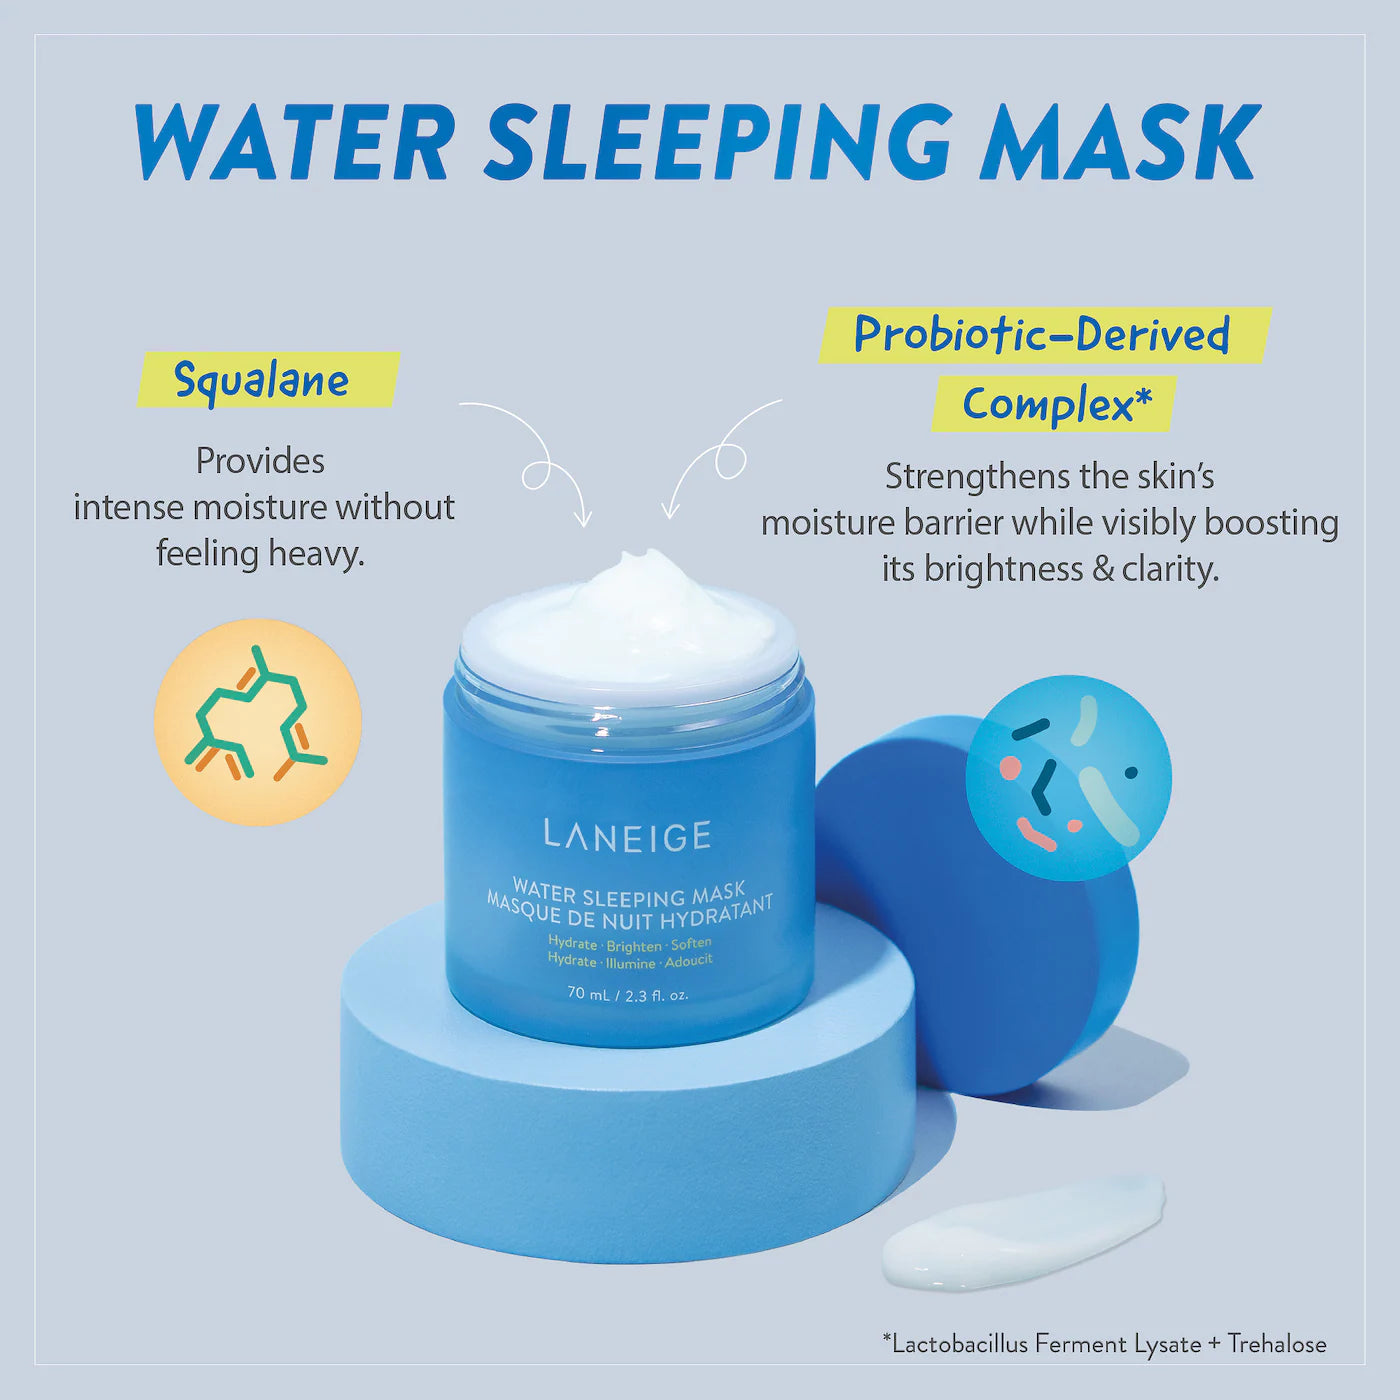 Water Sleeping Mask